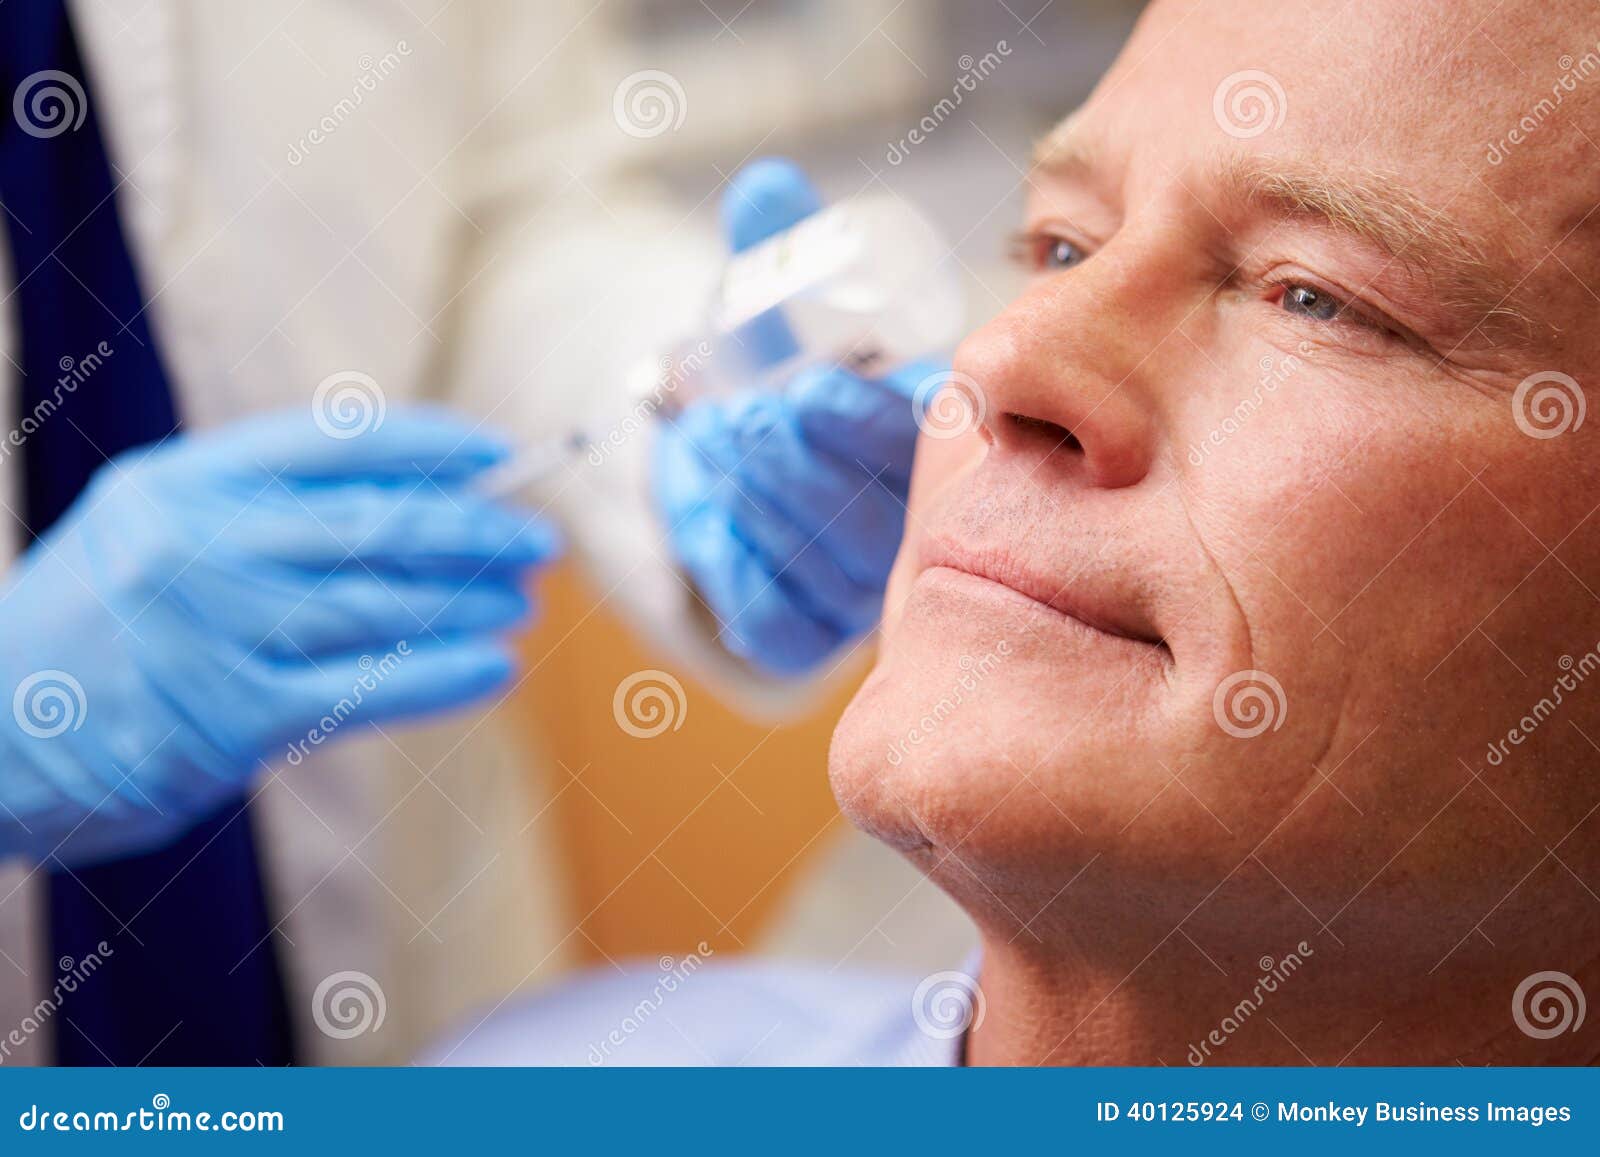 man having botox treatment at beauty clinic